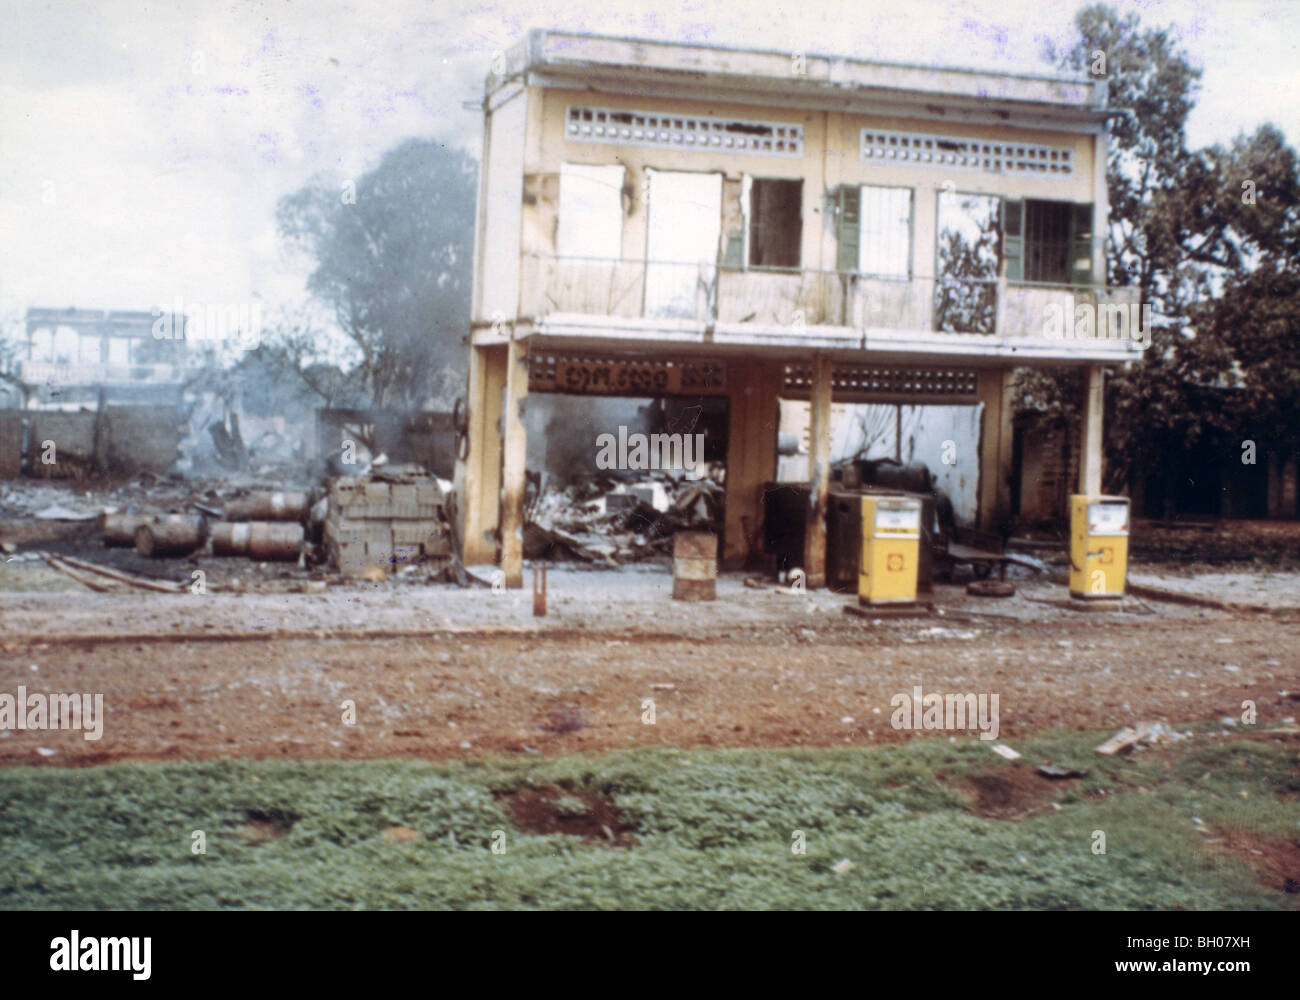 Snoul, kambodschanischen Shell-Tankstelle in Schutt und Asche nach Mai 1970 Invasion. 11th armored Cavalry Regiment sicherte sich das Gebiet mit APC M113. Stockfoto